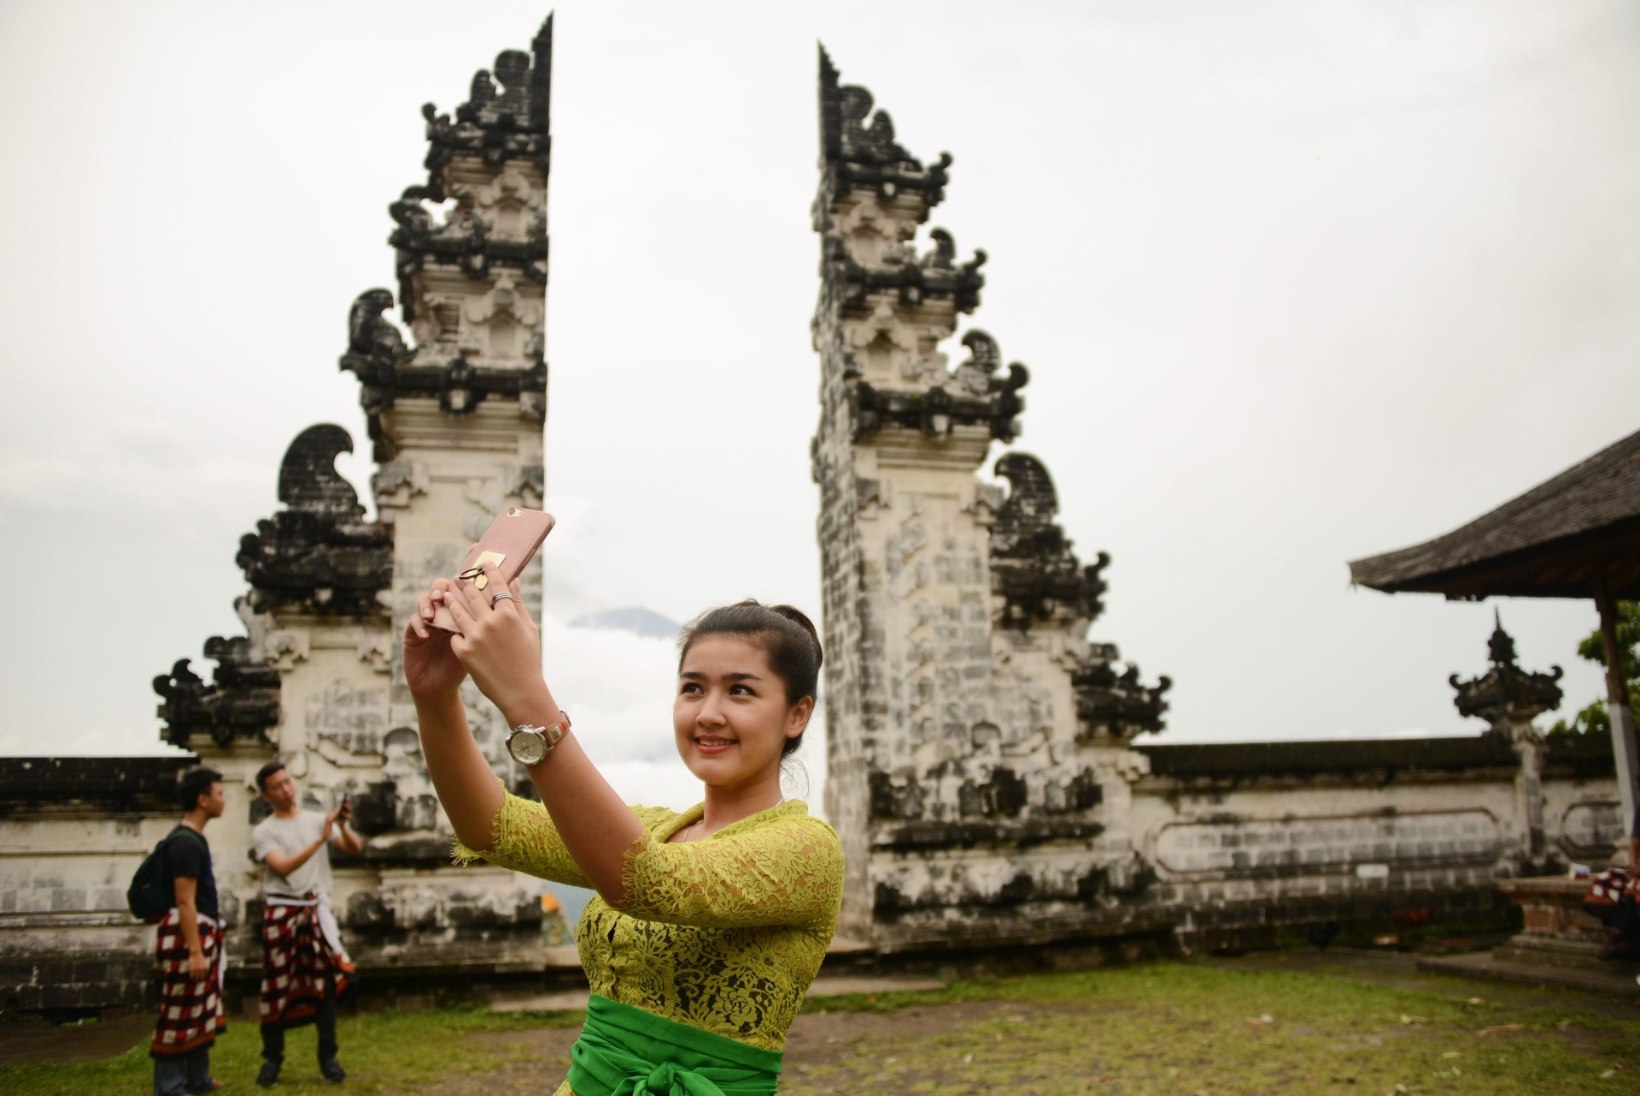 FOTOD | Himurad näitsikud poseerivad Bali purske taustal